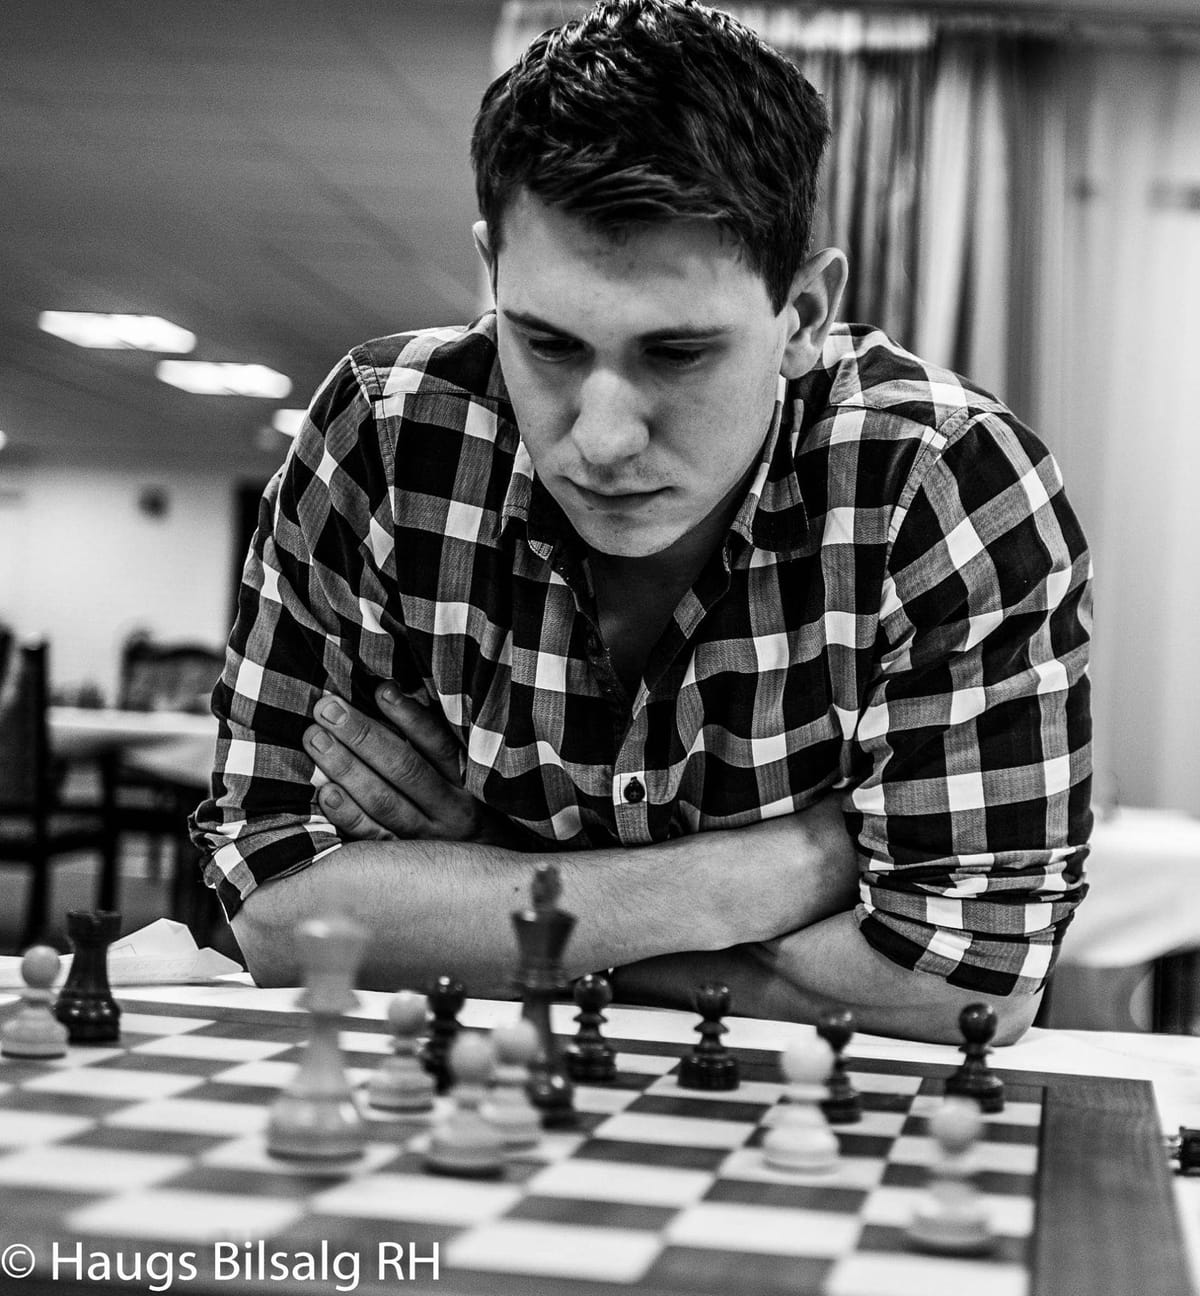 Garry Kasparov vs Magnus Carlsen!,  - Agadmator